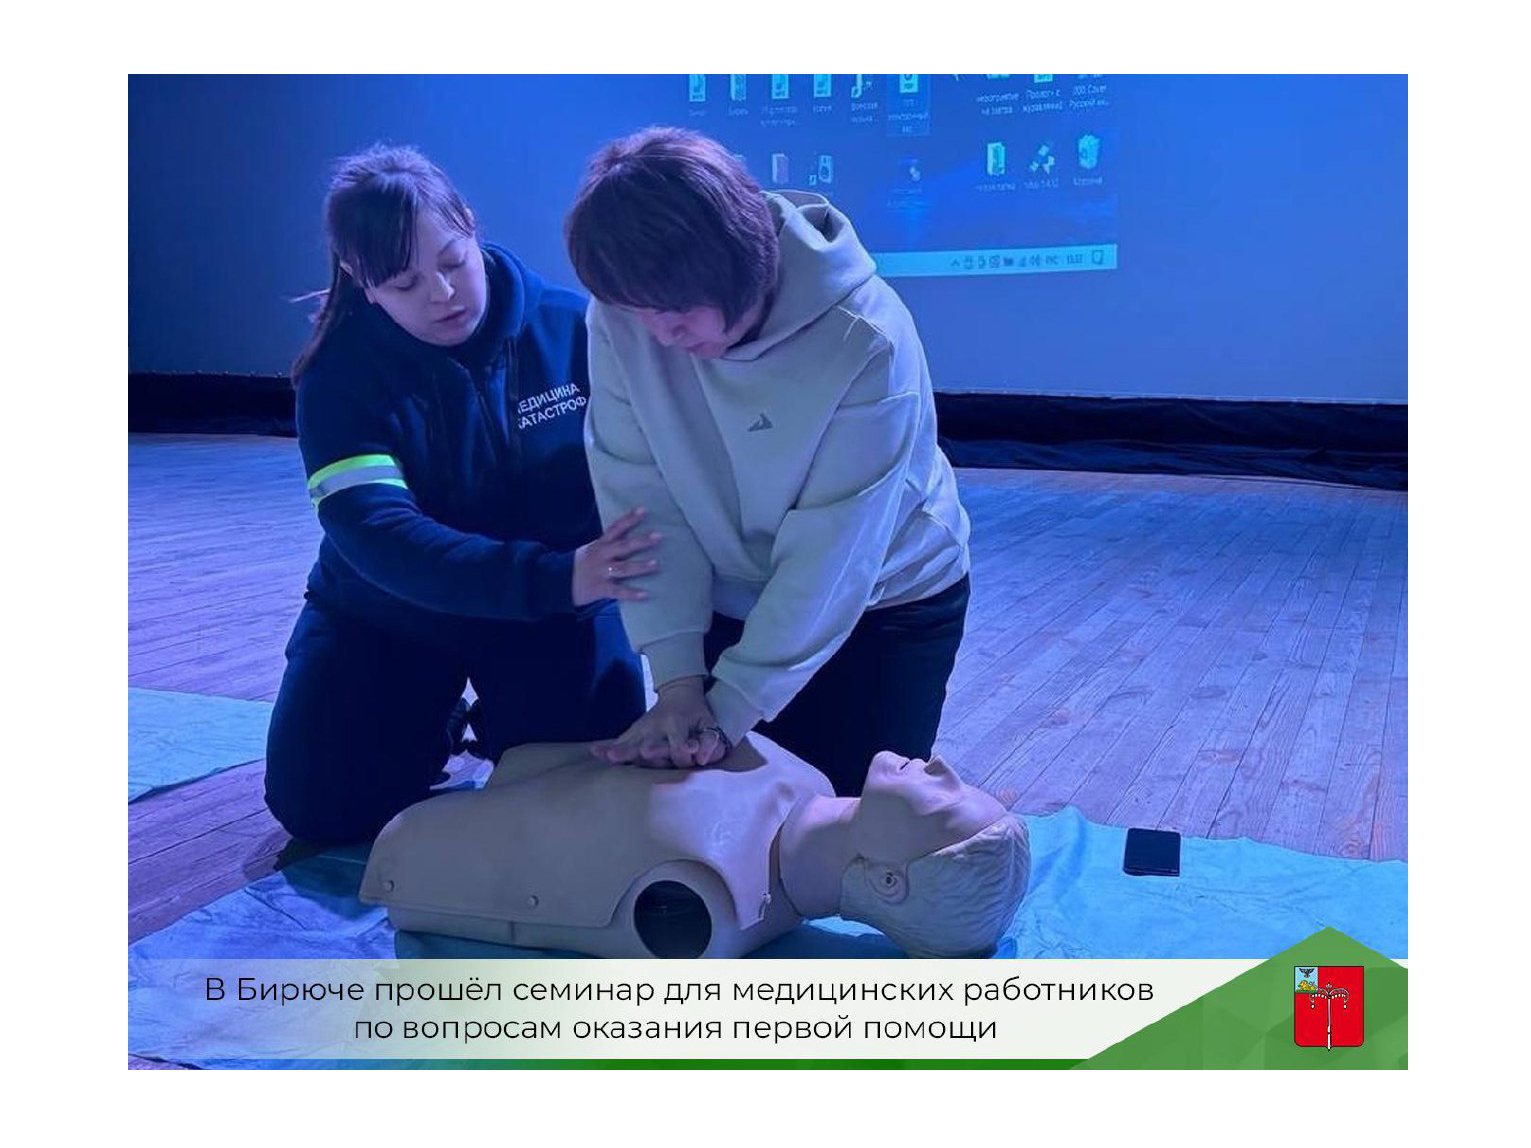 В Бирюче прошёл семинар для медицинских работников по вопросам оказания первой помощи.